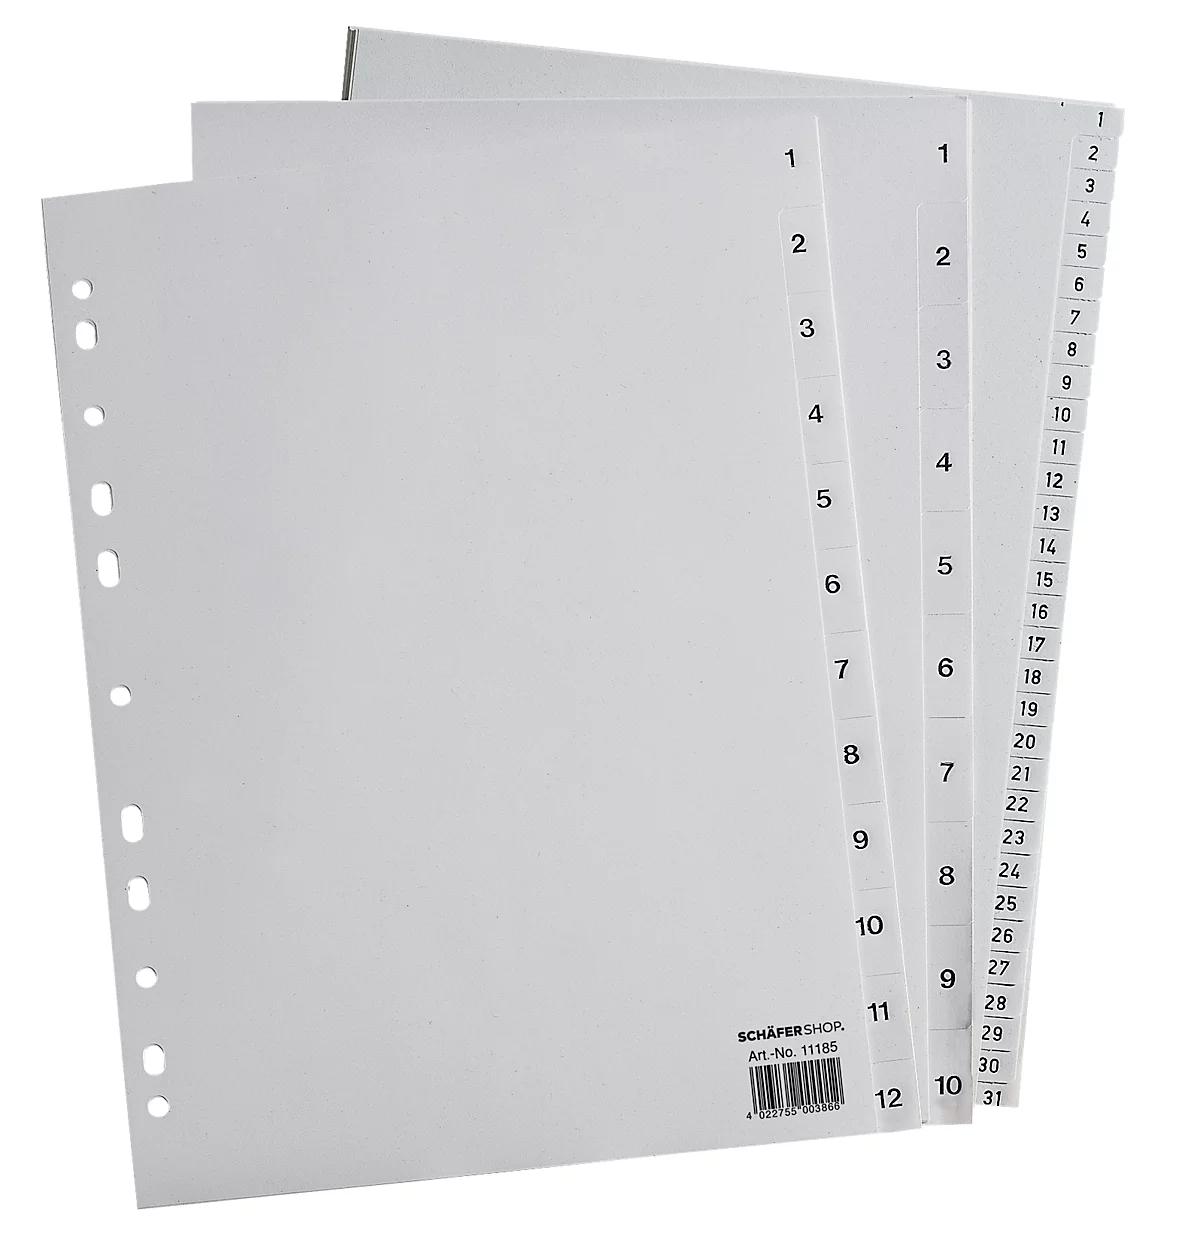 Schäfer Shop Select PP ordner-indexbladen, A4-formaat, cijfers 1-10, grijs